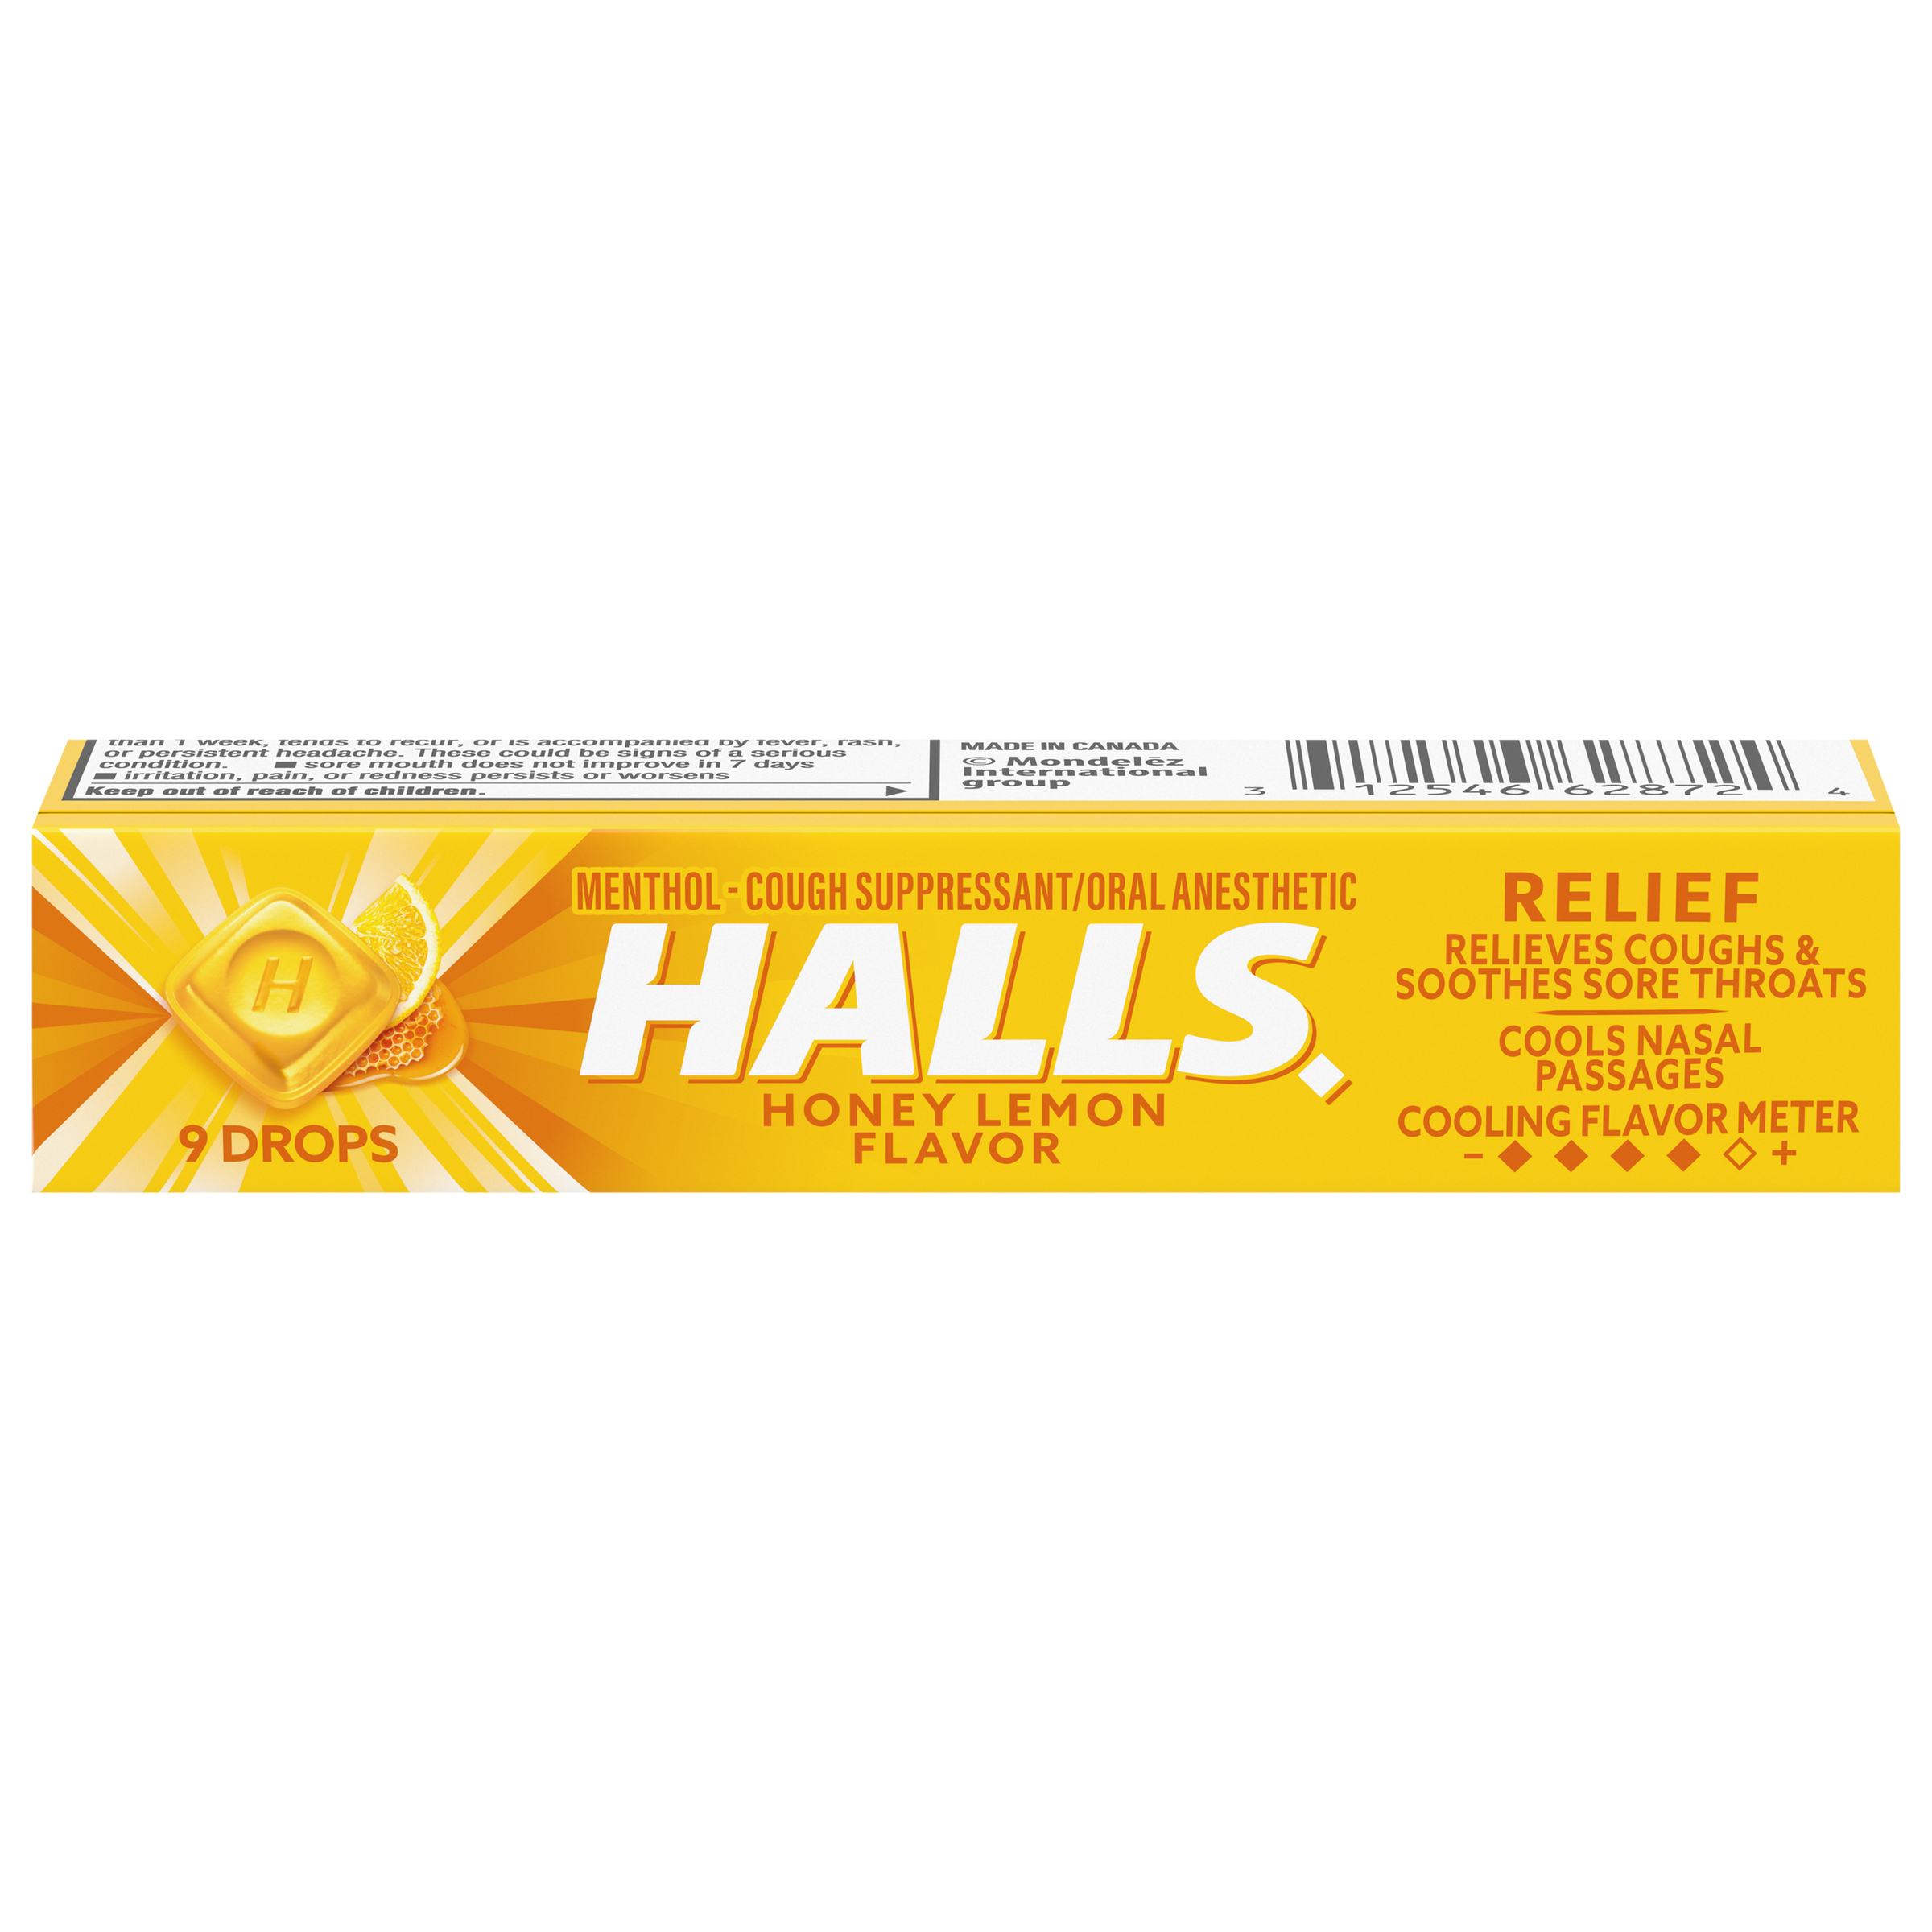 HALLS Honey Lemon Flavor Cough Drops Stick 9PCS 24x20